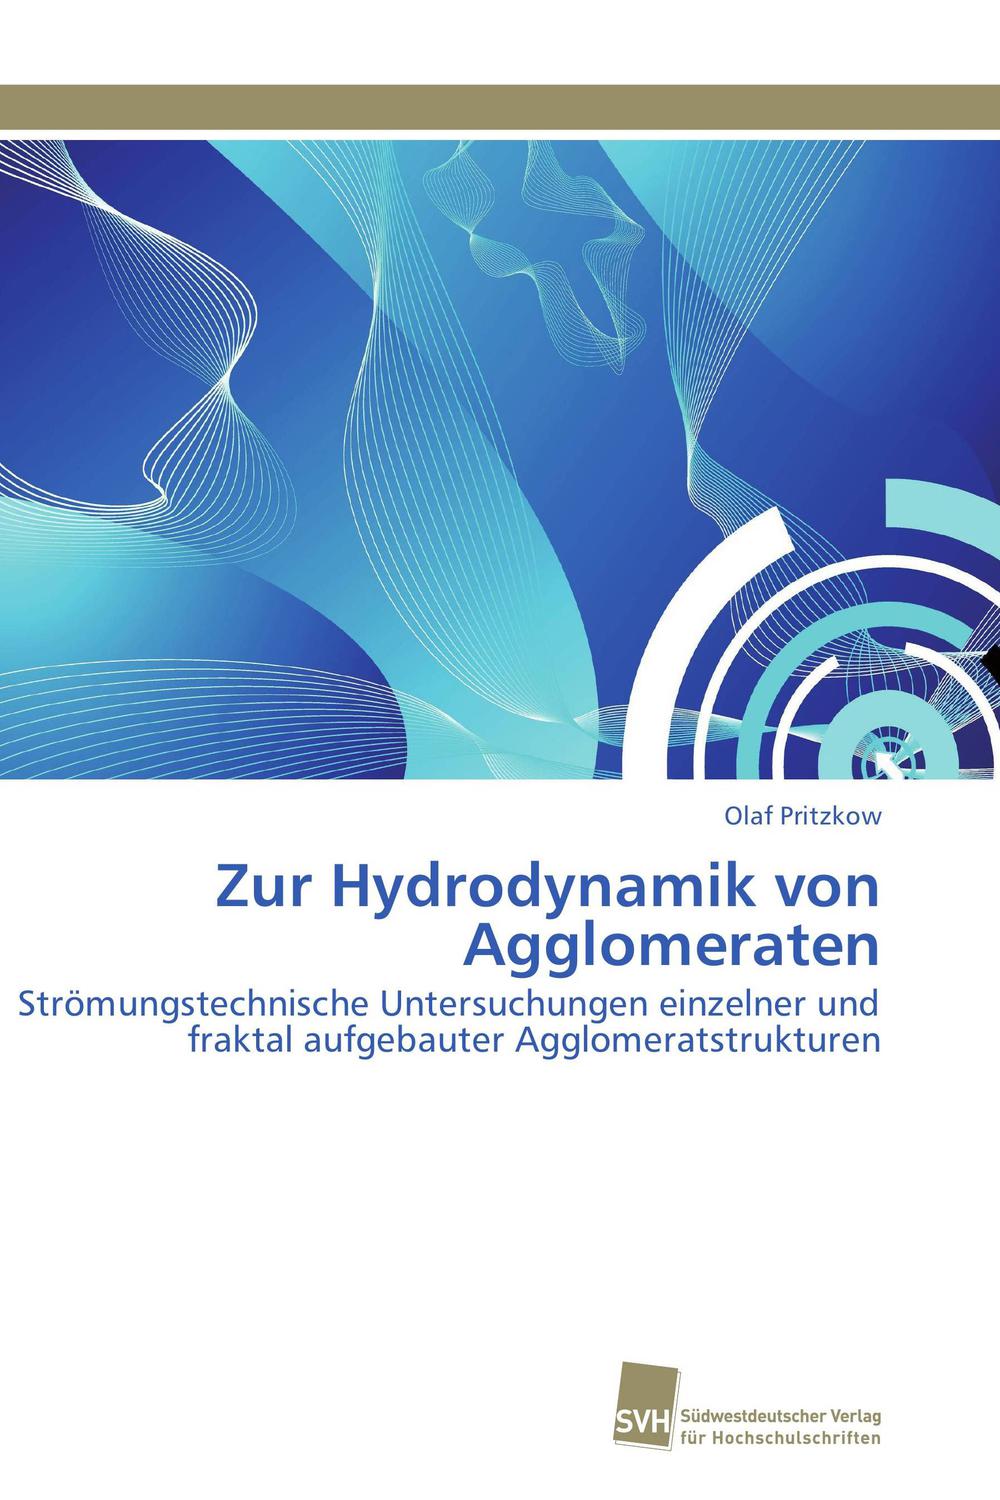 Zur Hydrodynamik von Agglomeraten - Olaf Pritzkow